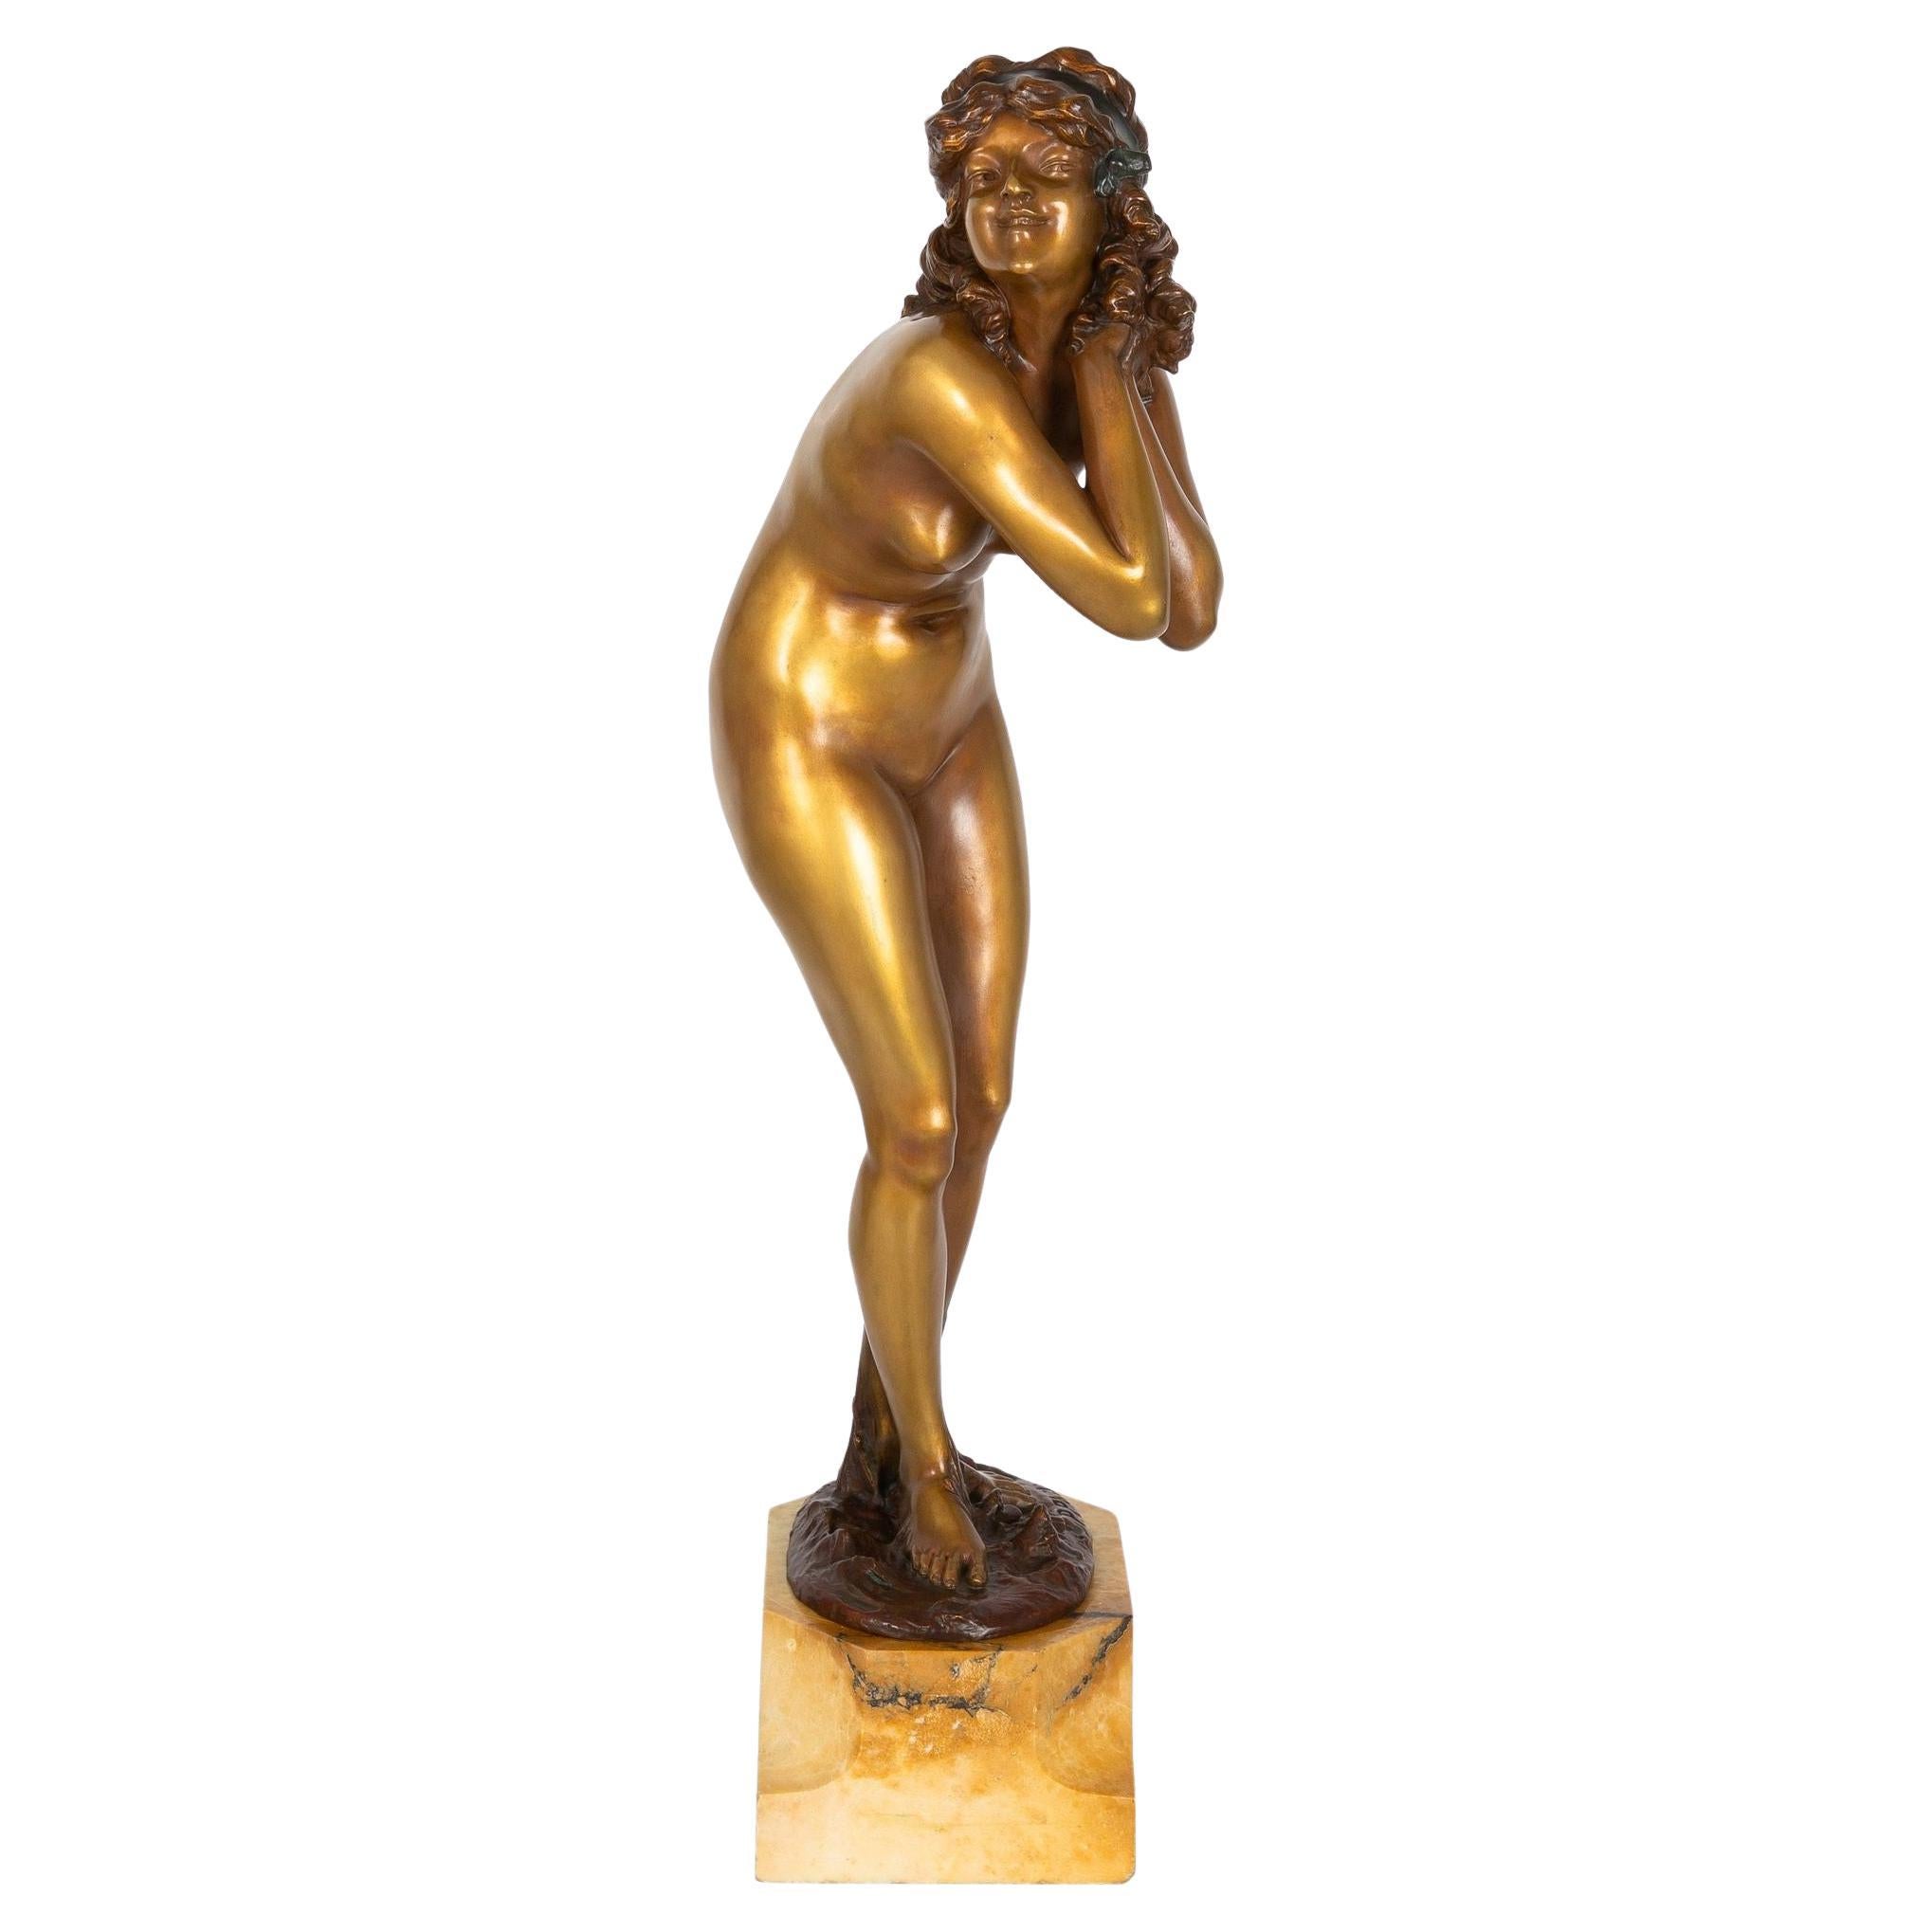 Rare Art Deco Bronze Sculpture “Mischievous” by Paul Philippe